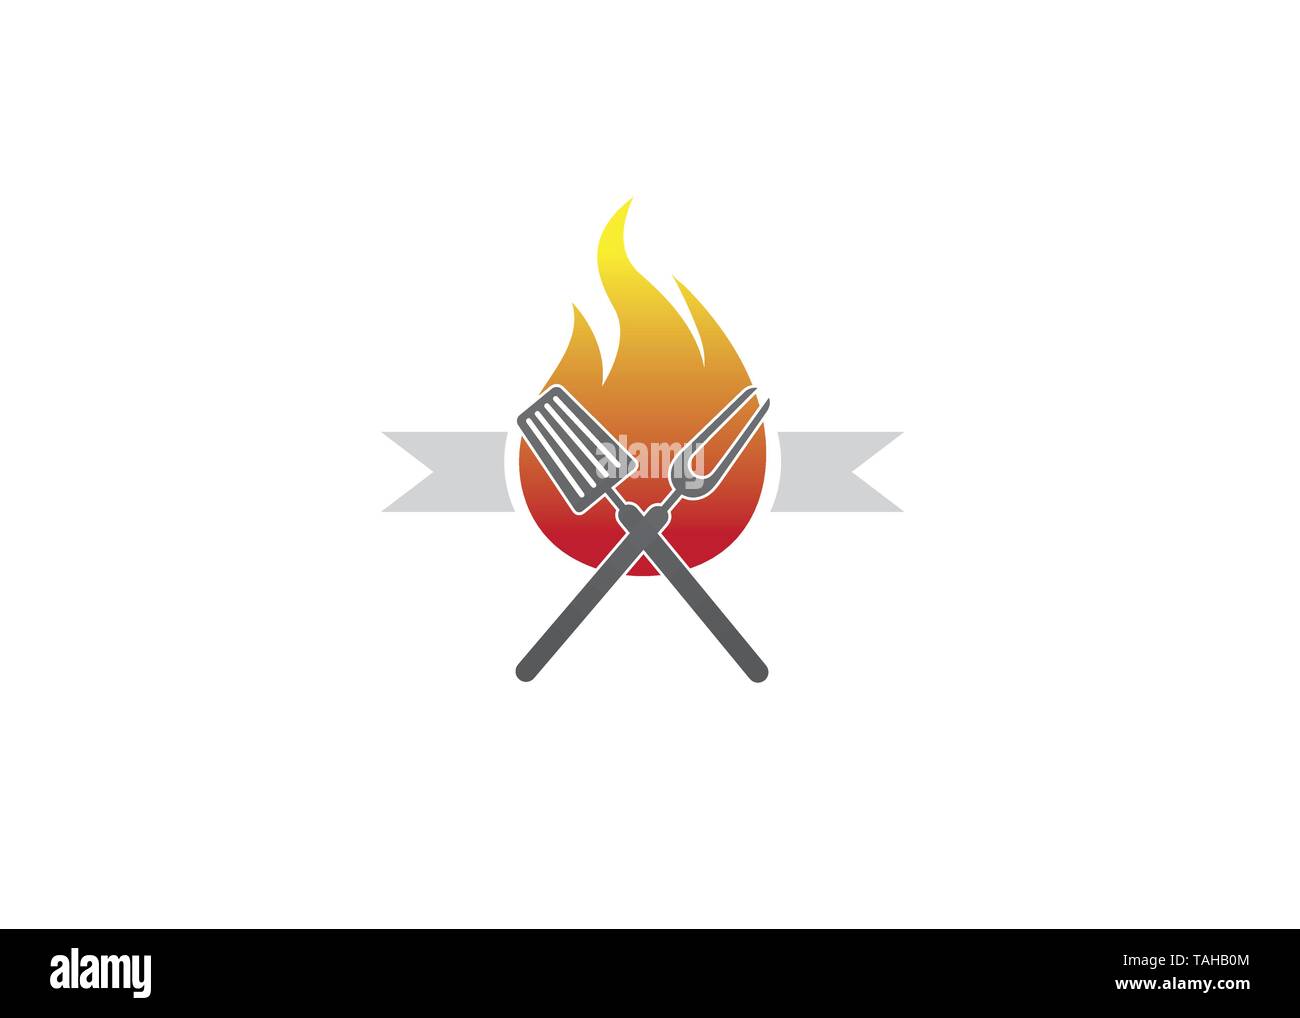 Creative Barbecure Logo Vector Design Stock Vector